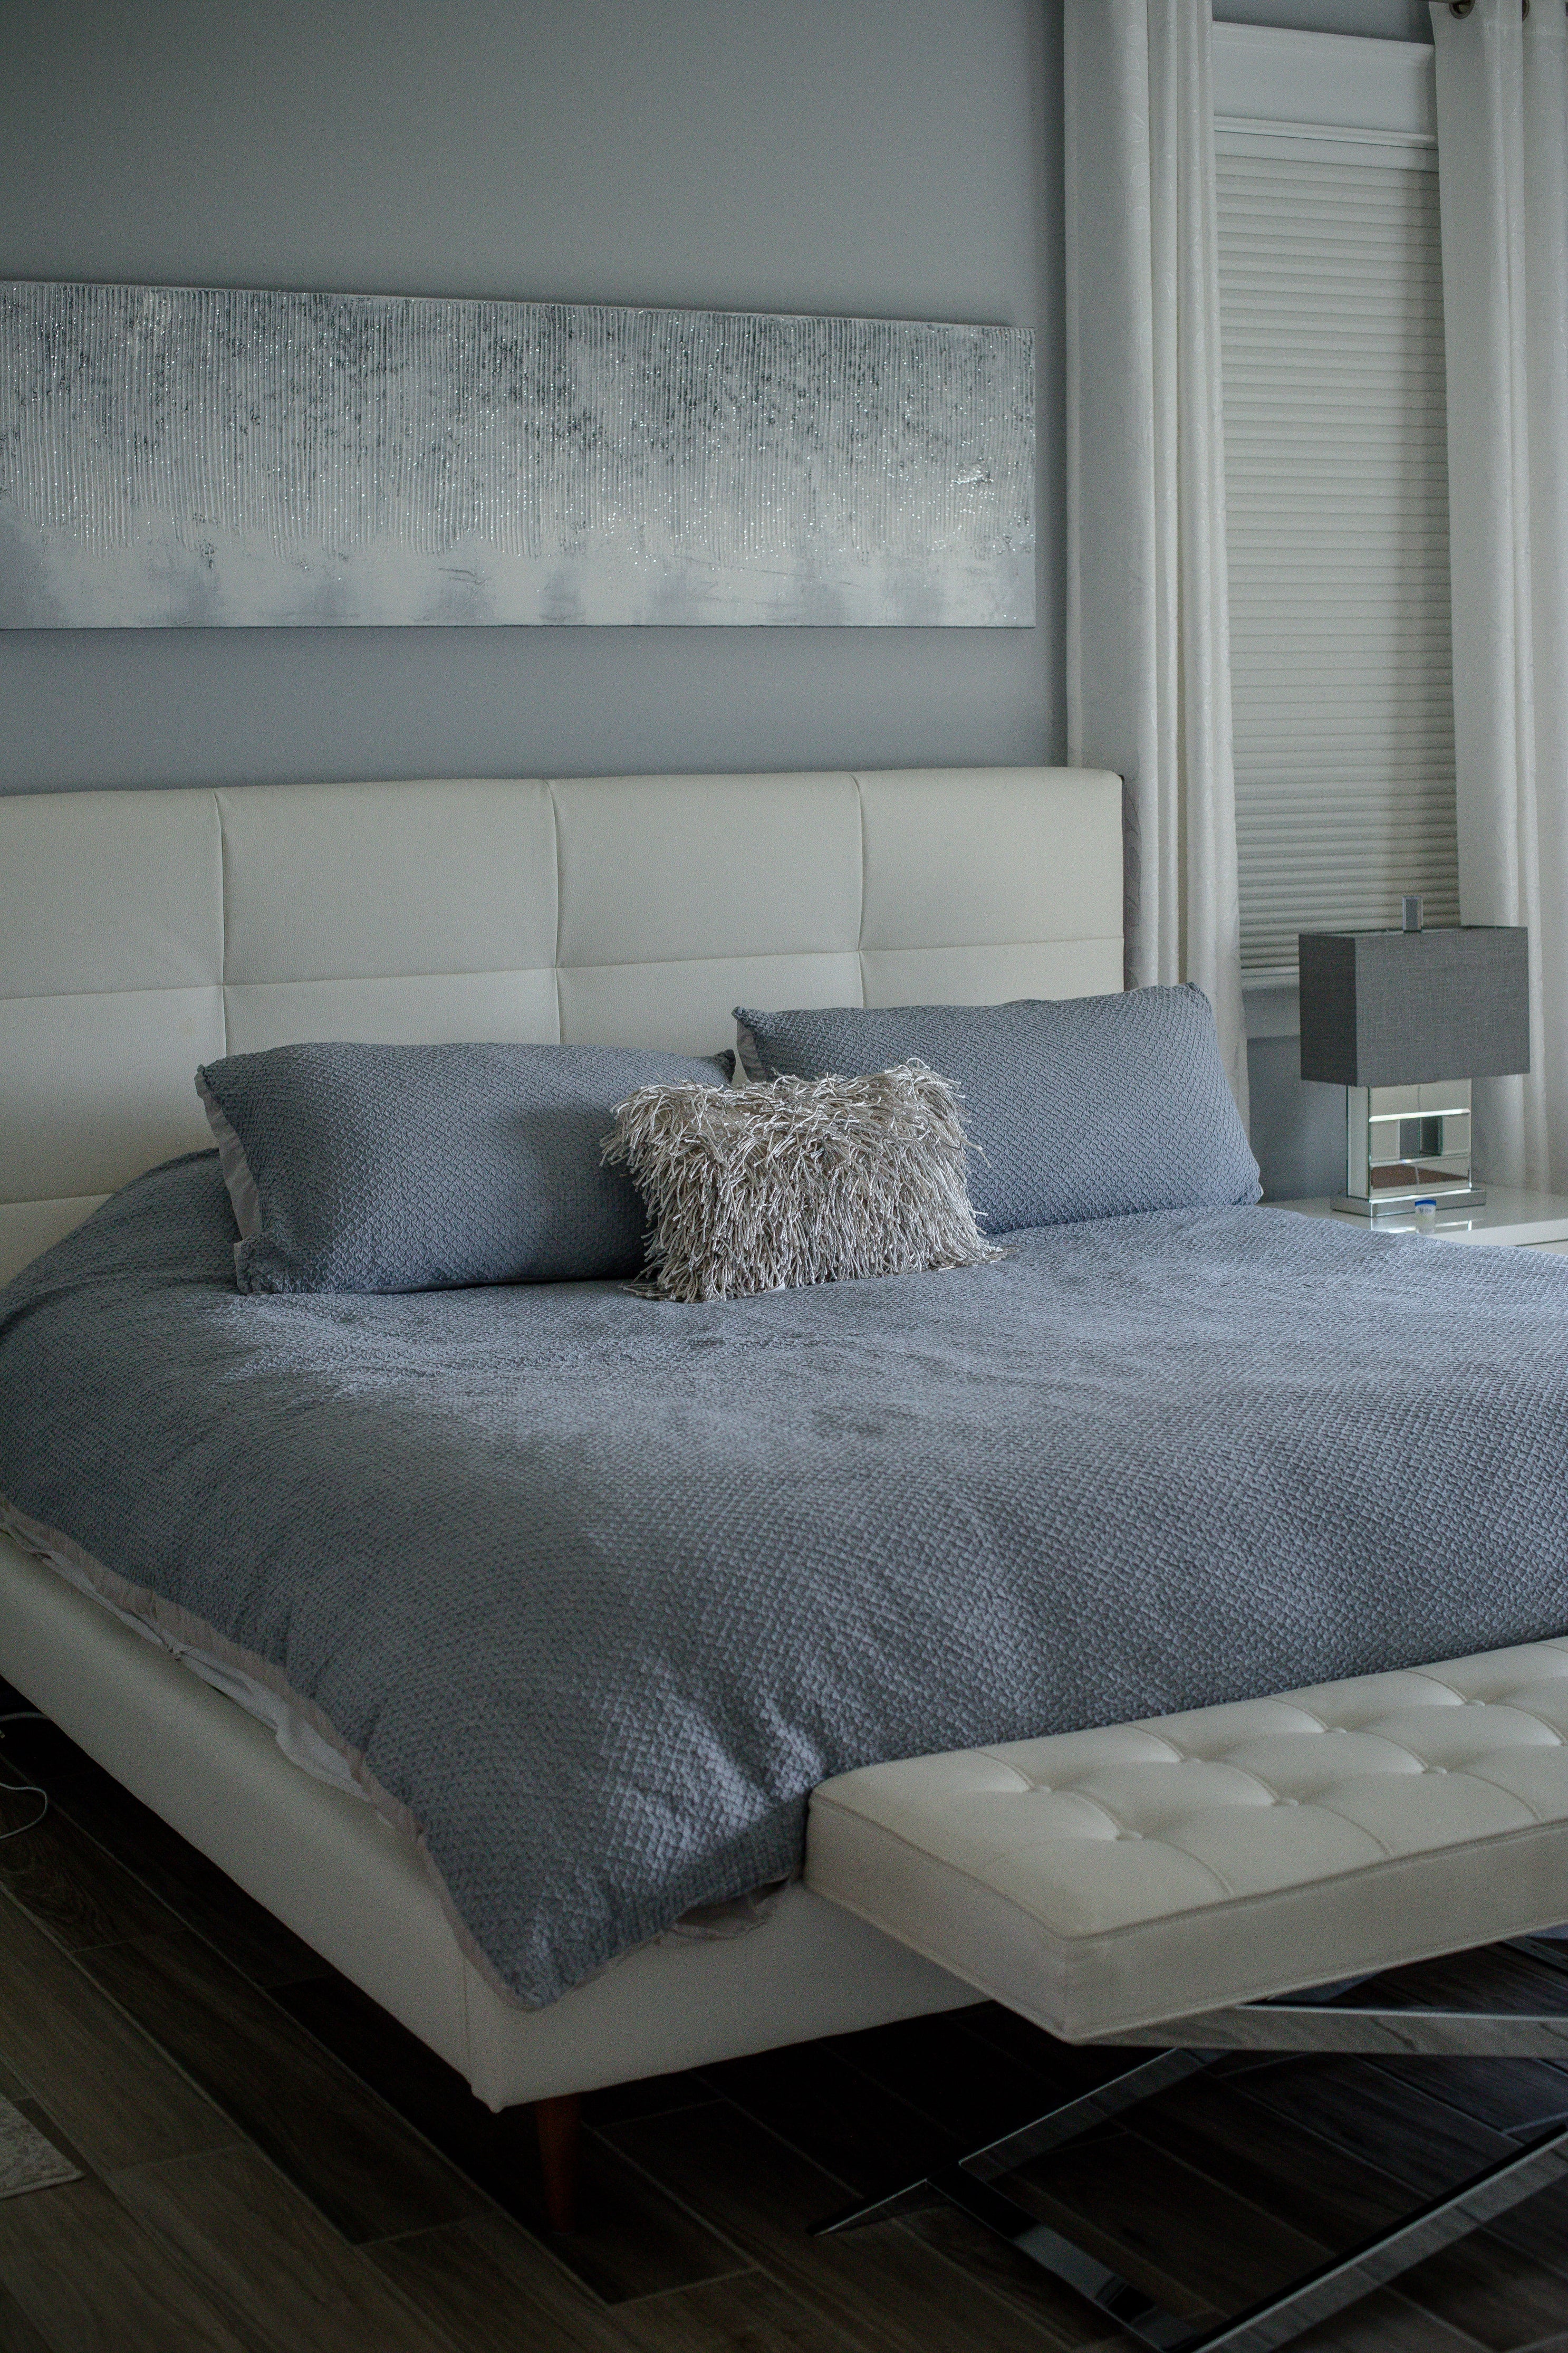 Create a Cozy Bedroom Retreat